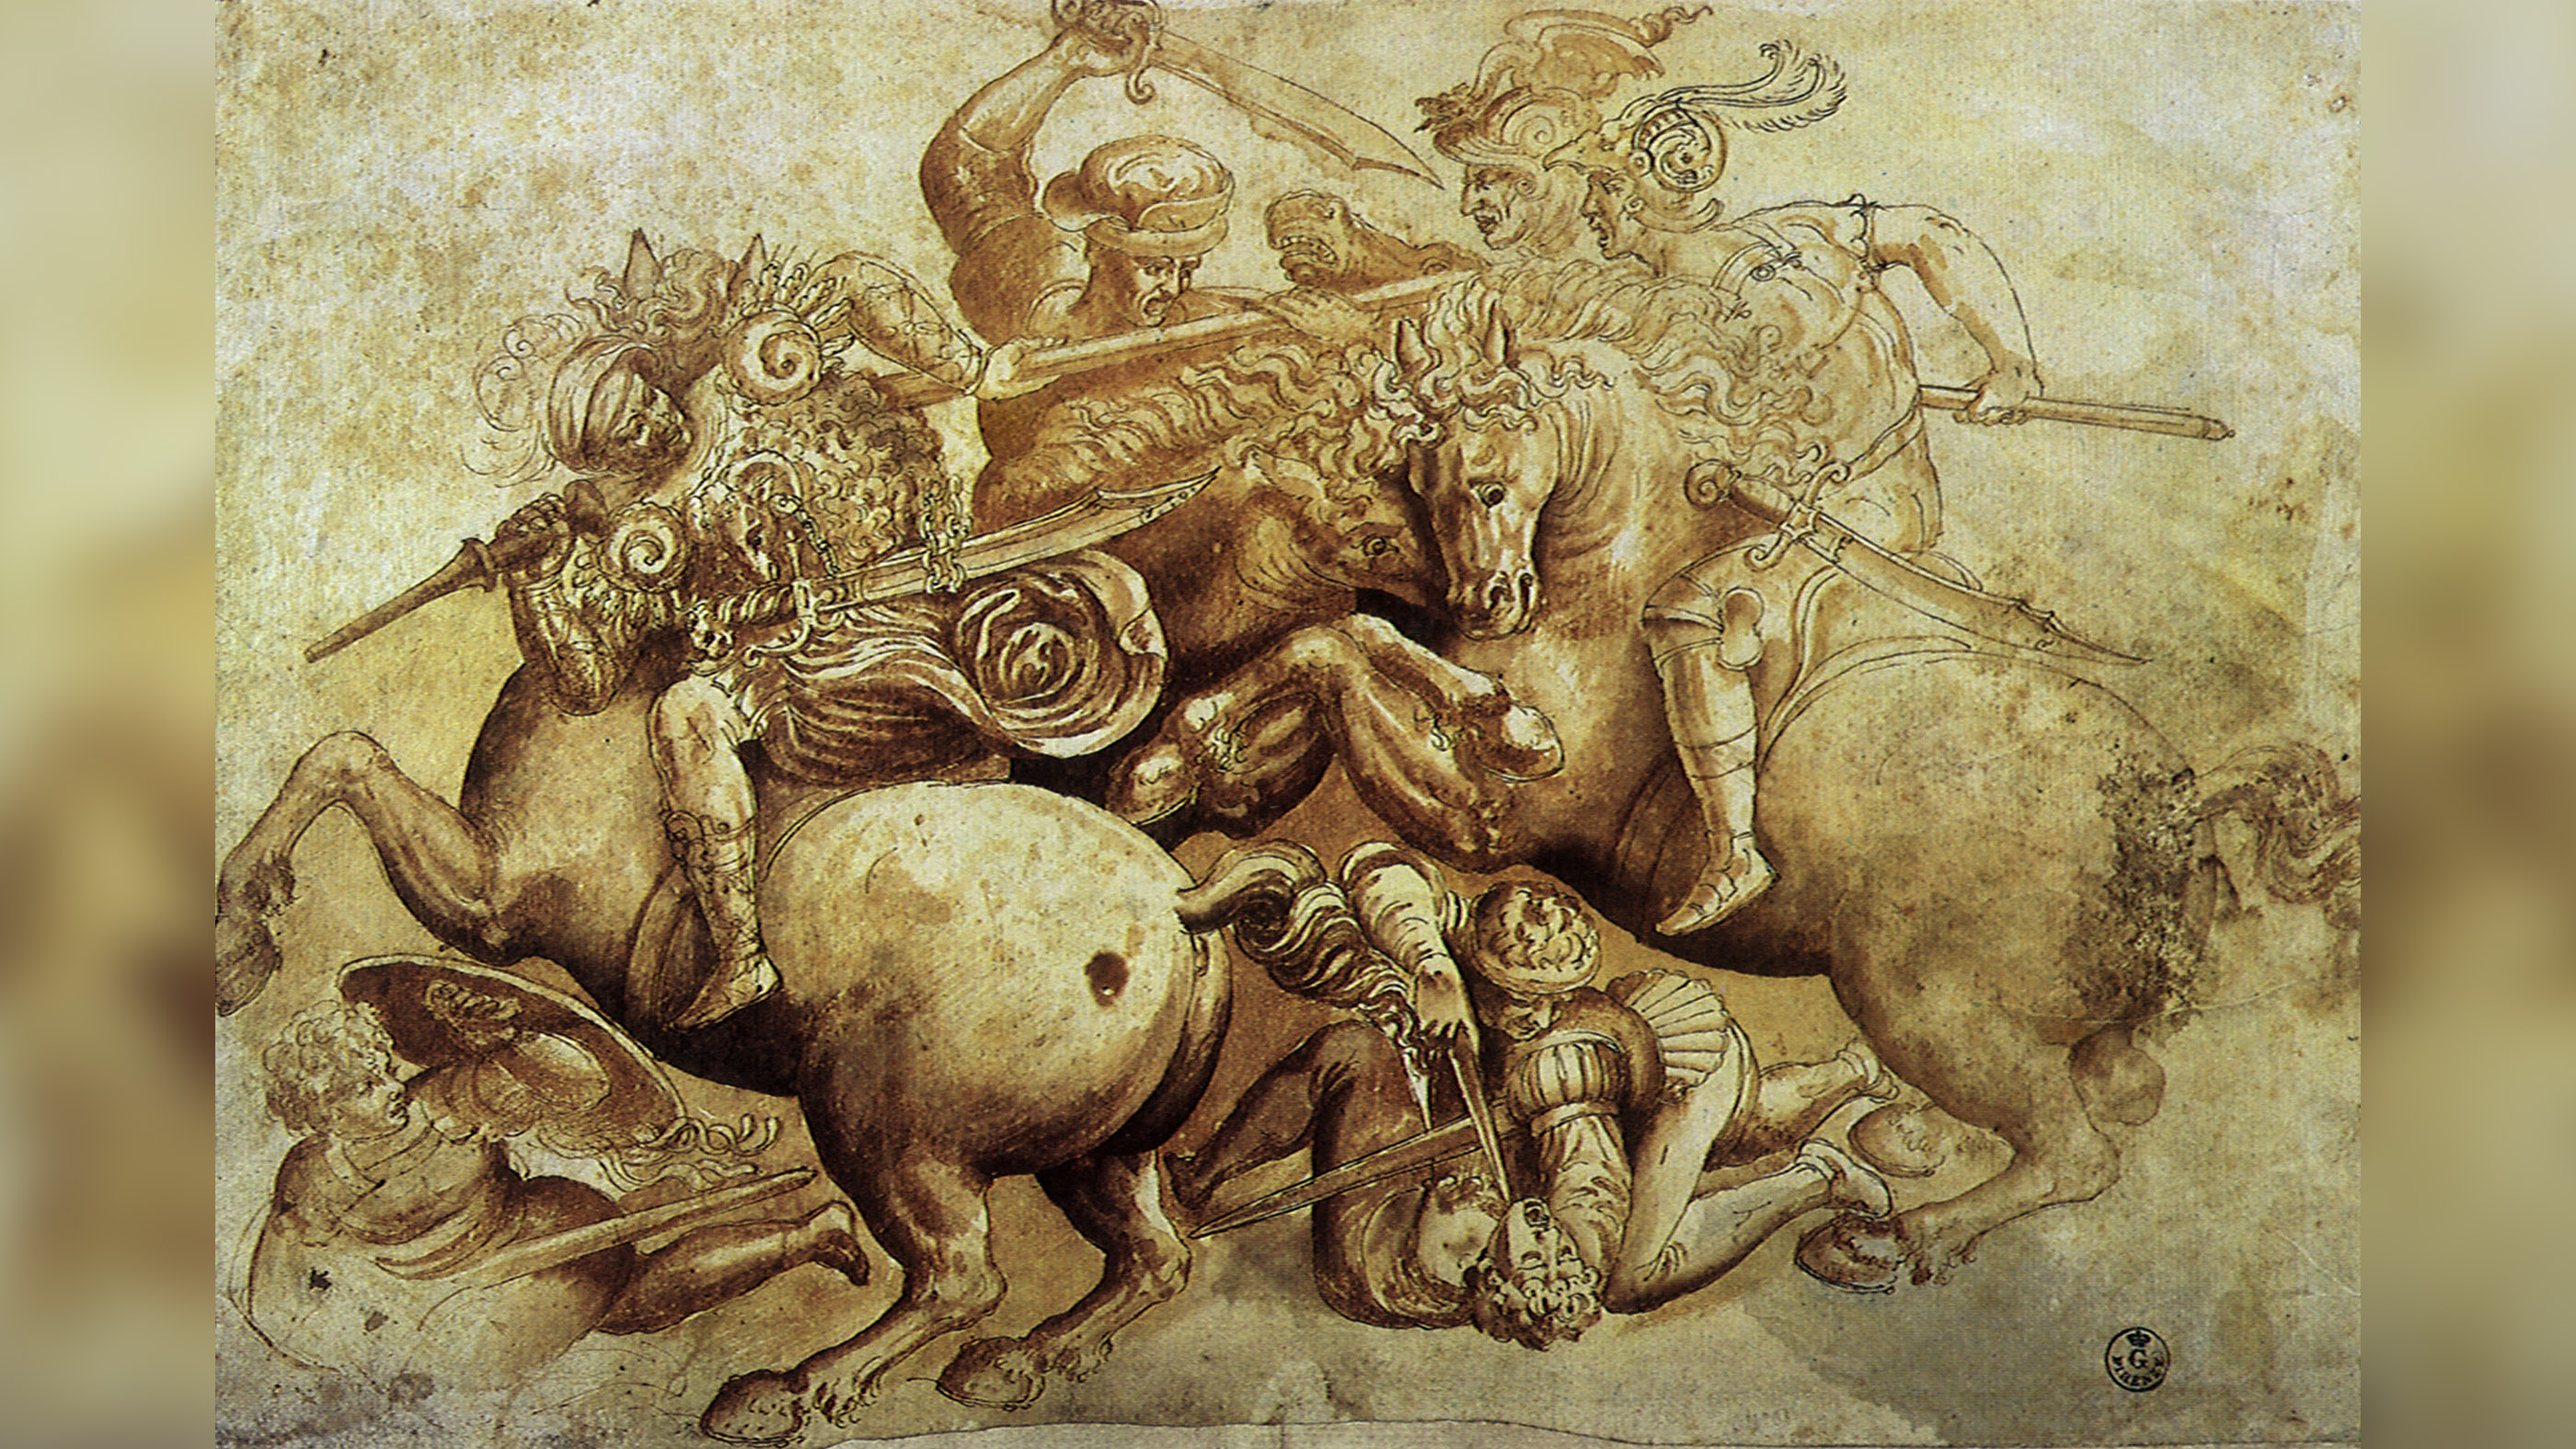 The Battle of Anghiari by Leonardo da Vinci, 1500.